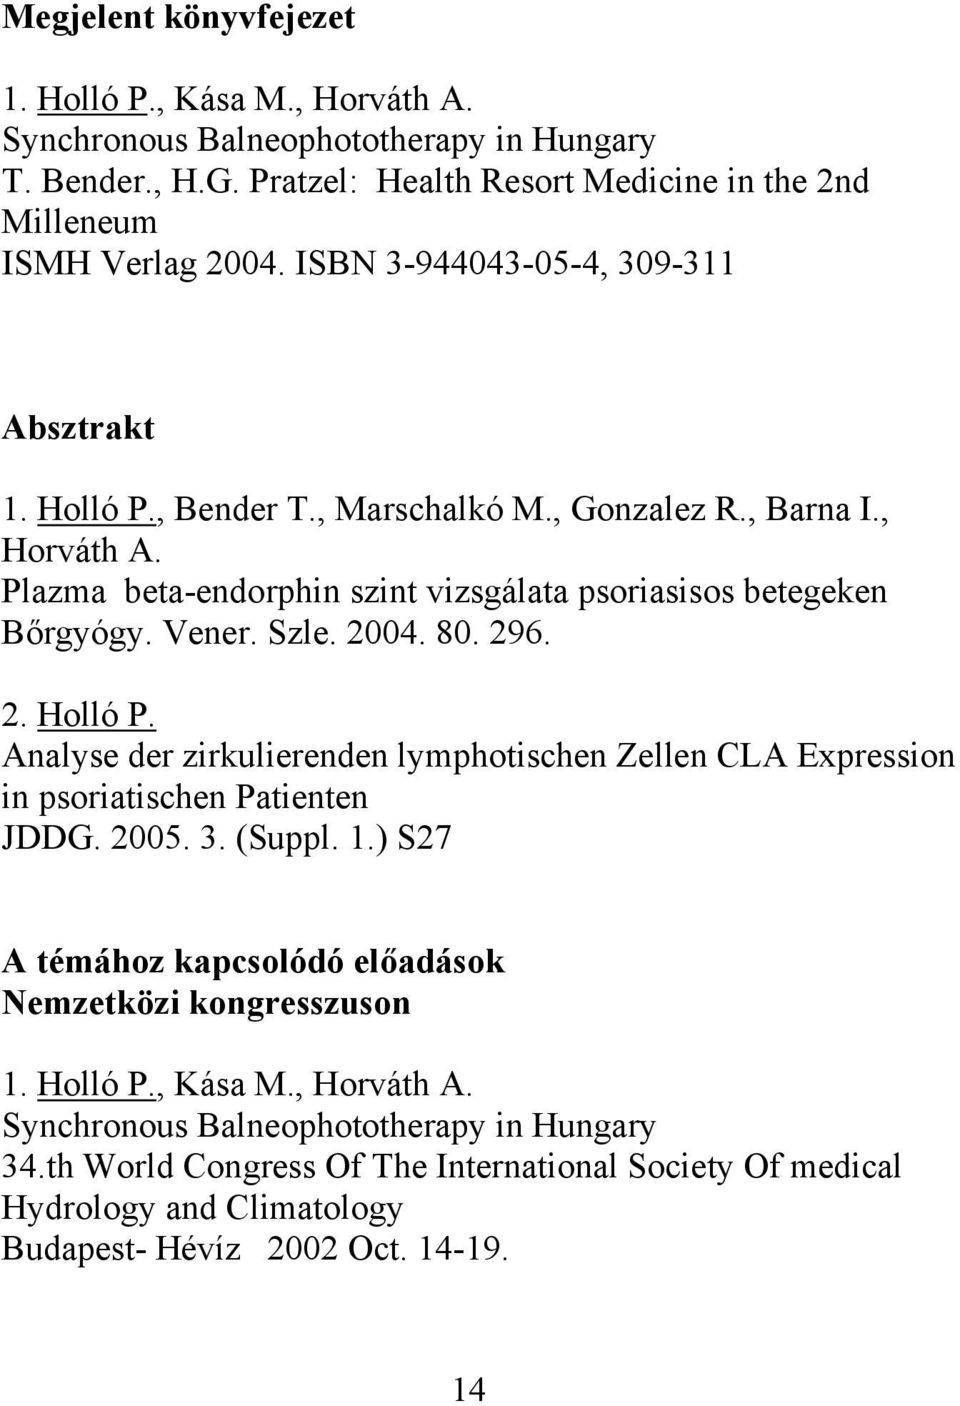 2004. 80. 296. 2. Holló P. Analyse der zirkulierenden lymphotischen Zellen CLA Expression in psoriatischen Patienten JDDG. 2005. 3. (Suppl. 1.